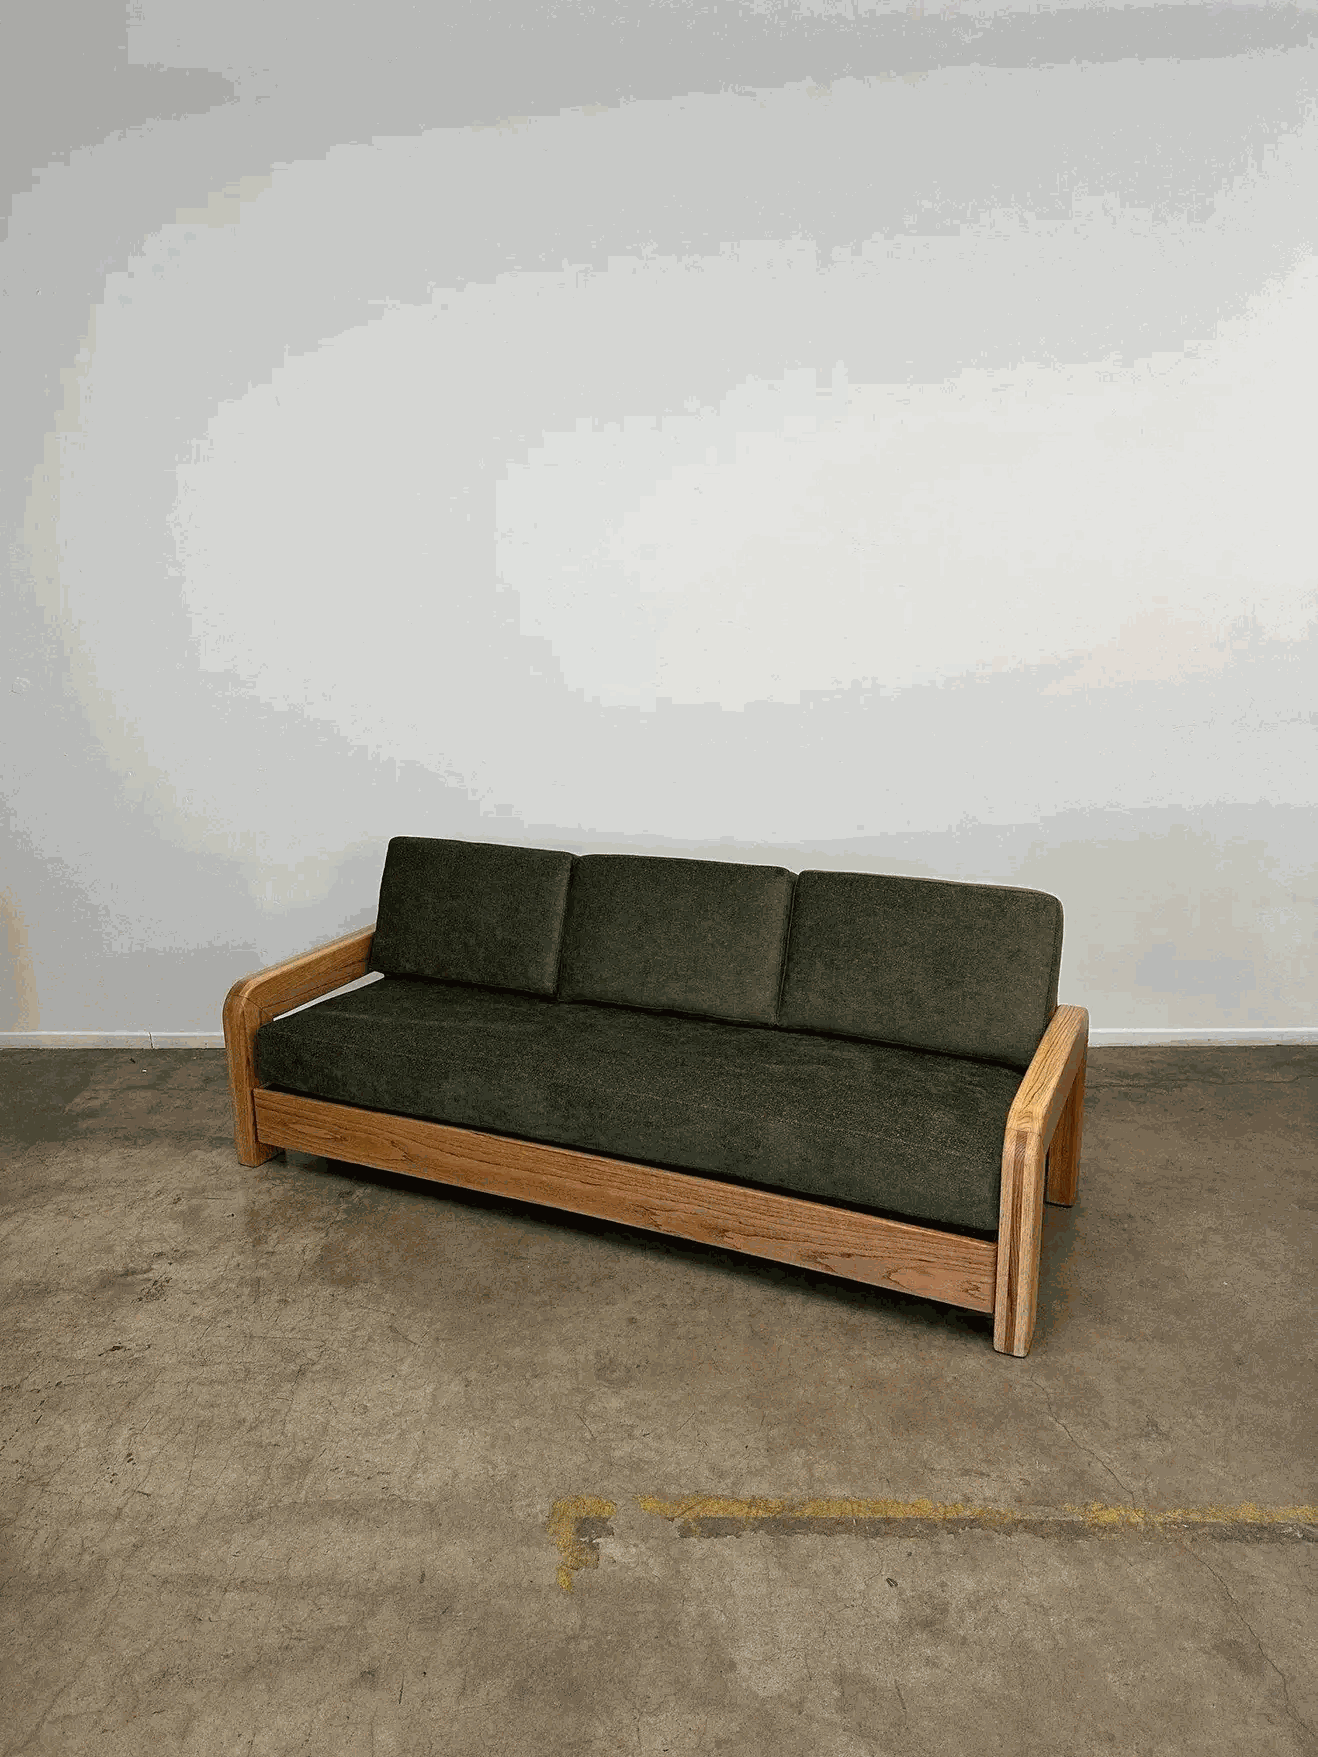 Với sự kết hợp ăn ý giữa yếu tố cổ điển và hiện đại, sofa gỗ Sồi (Oak) kết hợp cùng nệm da cao cấp giúp đem đến cho phòng khách nhà bạn sự hiện đại, sang trọng vô cùng